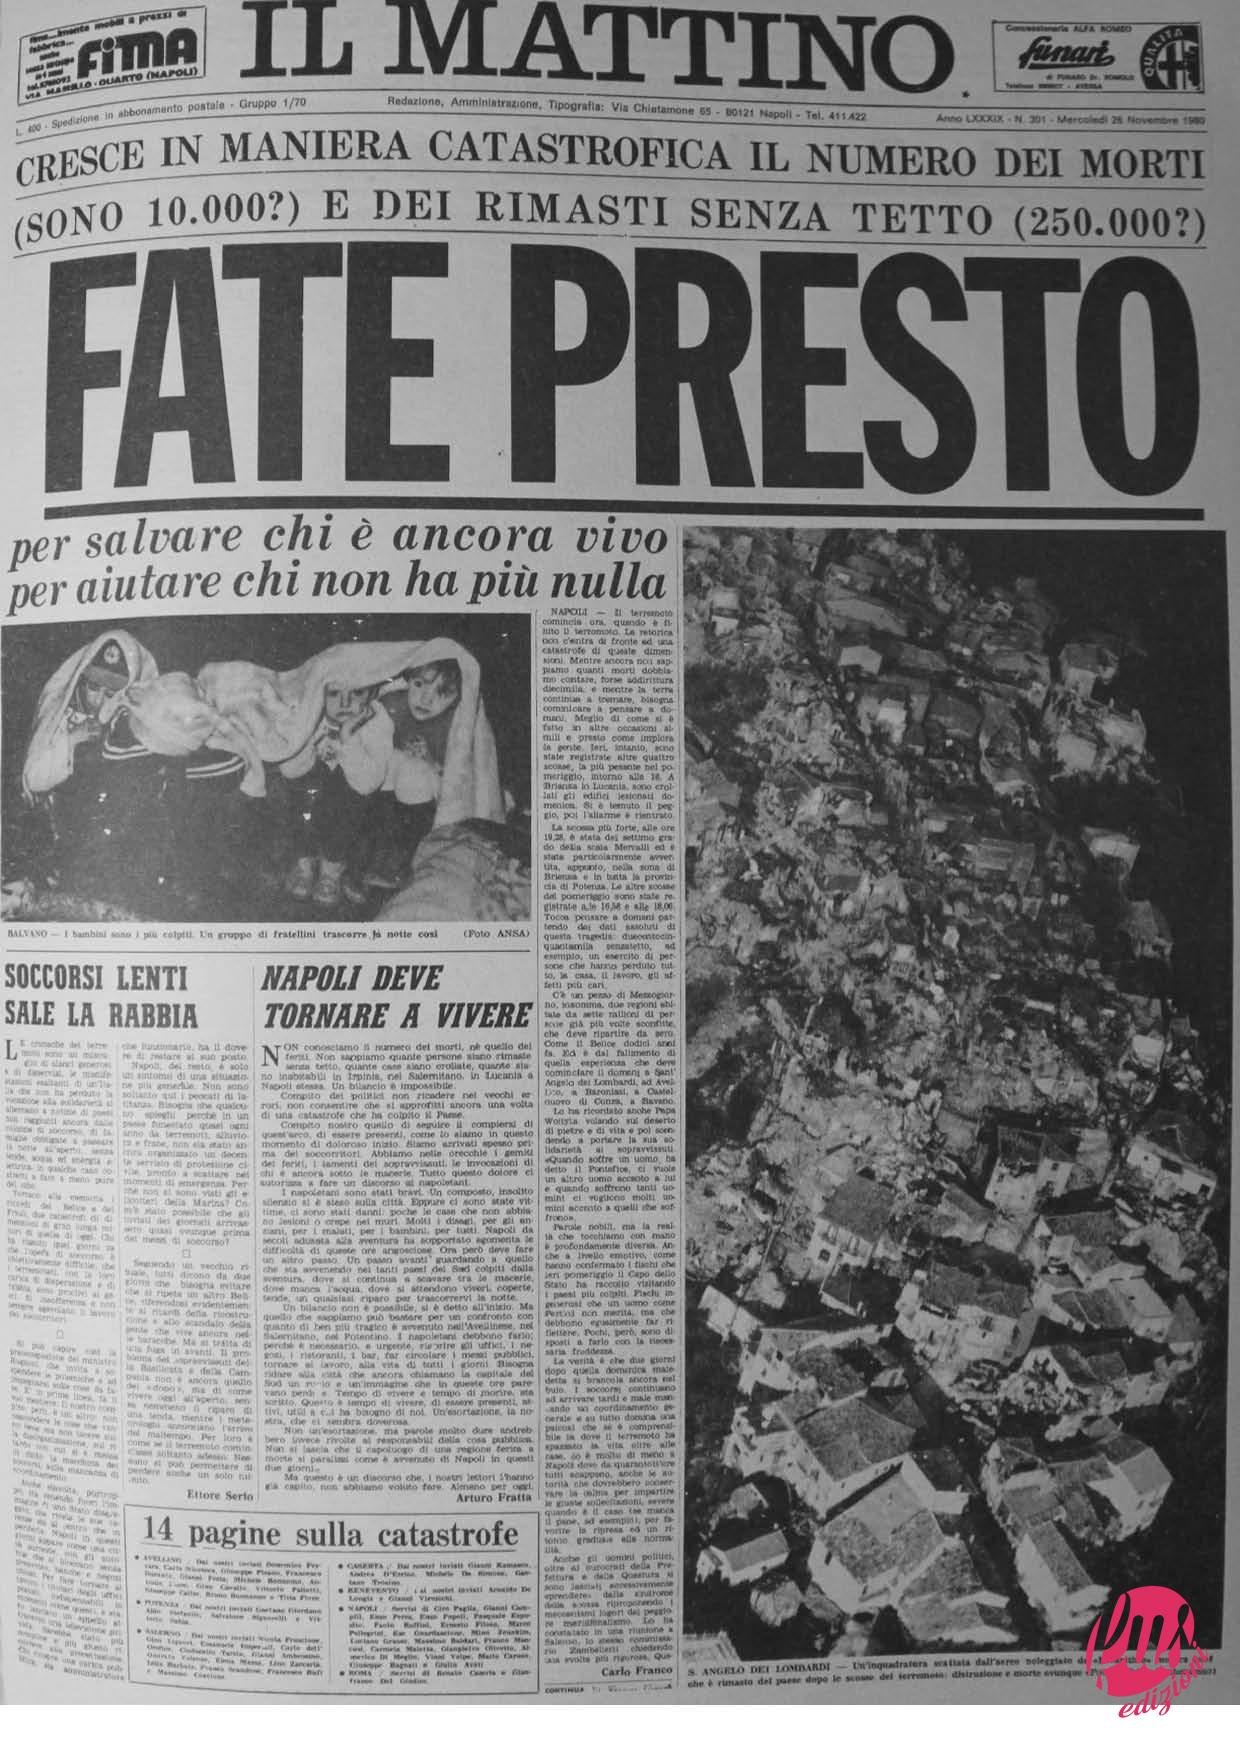 Il Mattino, 26.11.1980